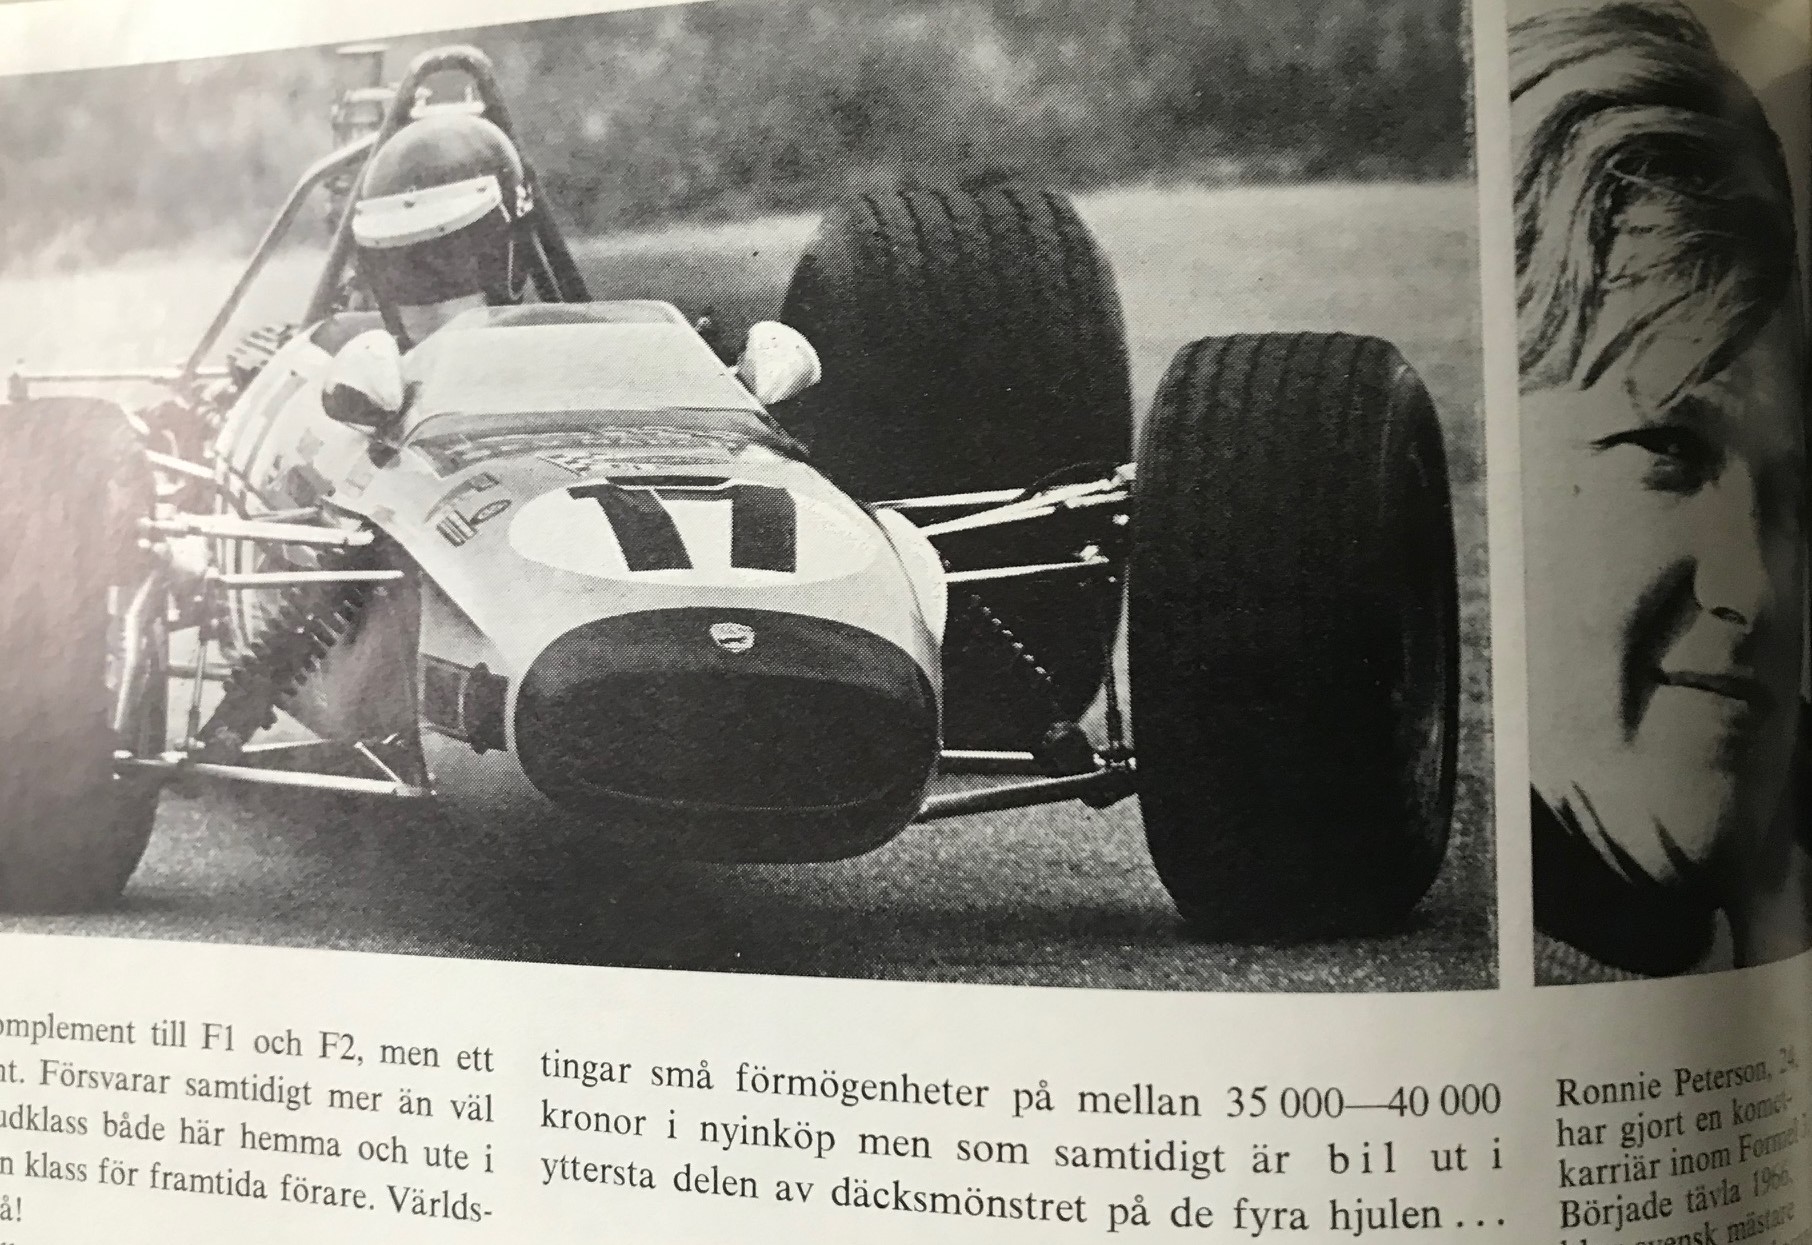 Årets BILsport 1968-69 - Kampen mellan Ronnie o Reine i F3 - 190 sid - 21x24 cm